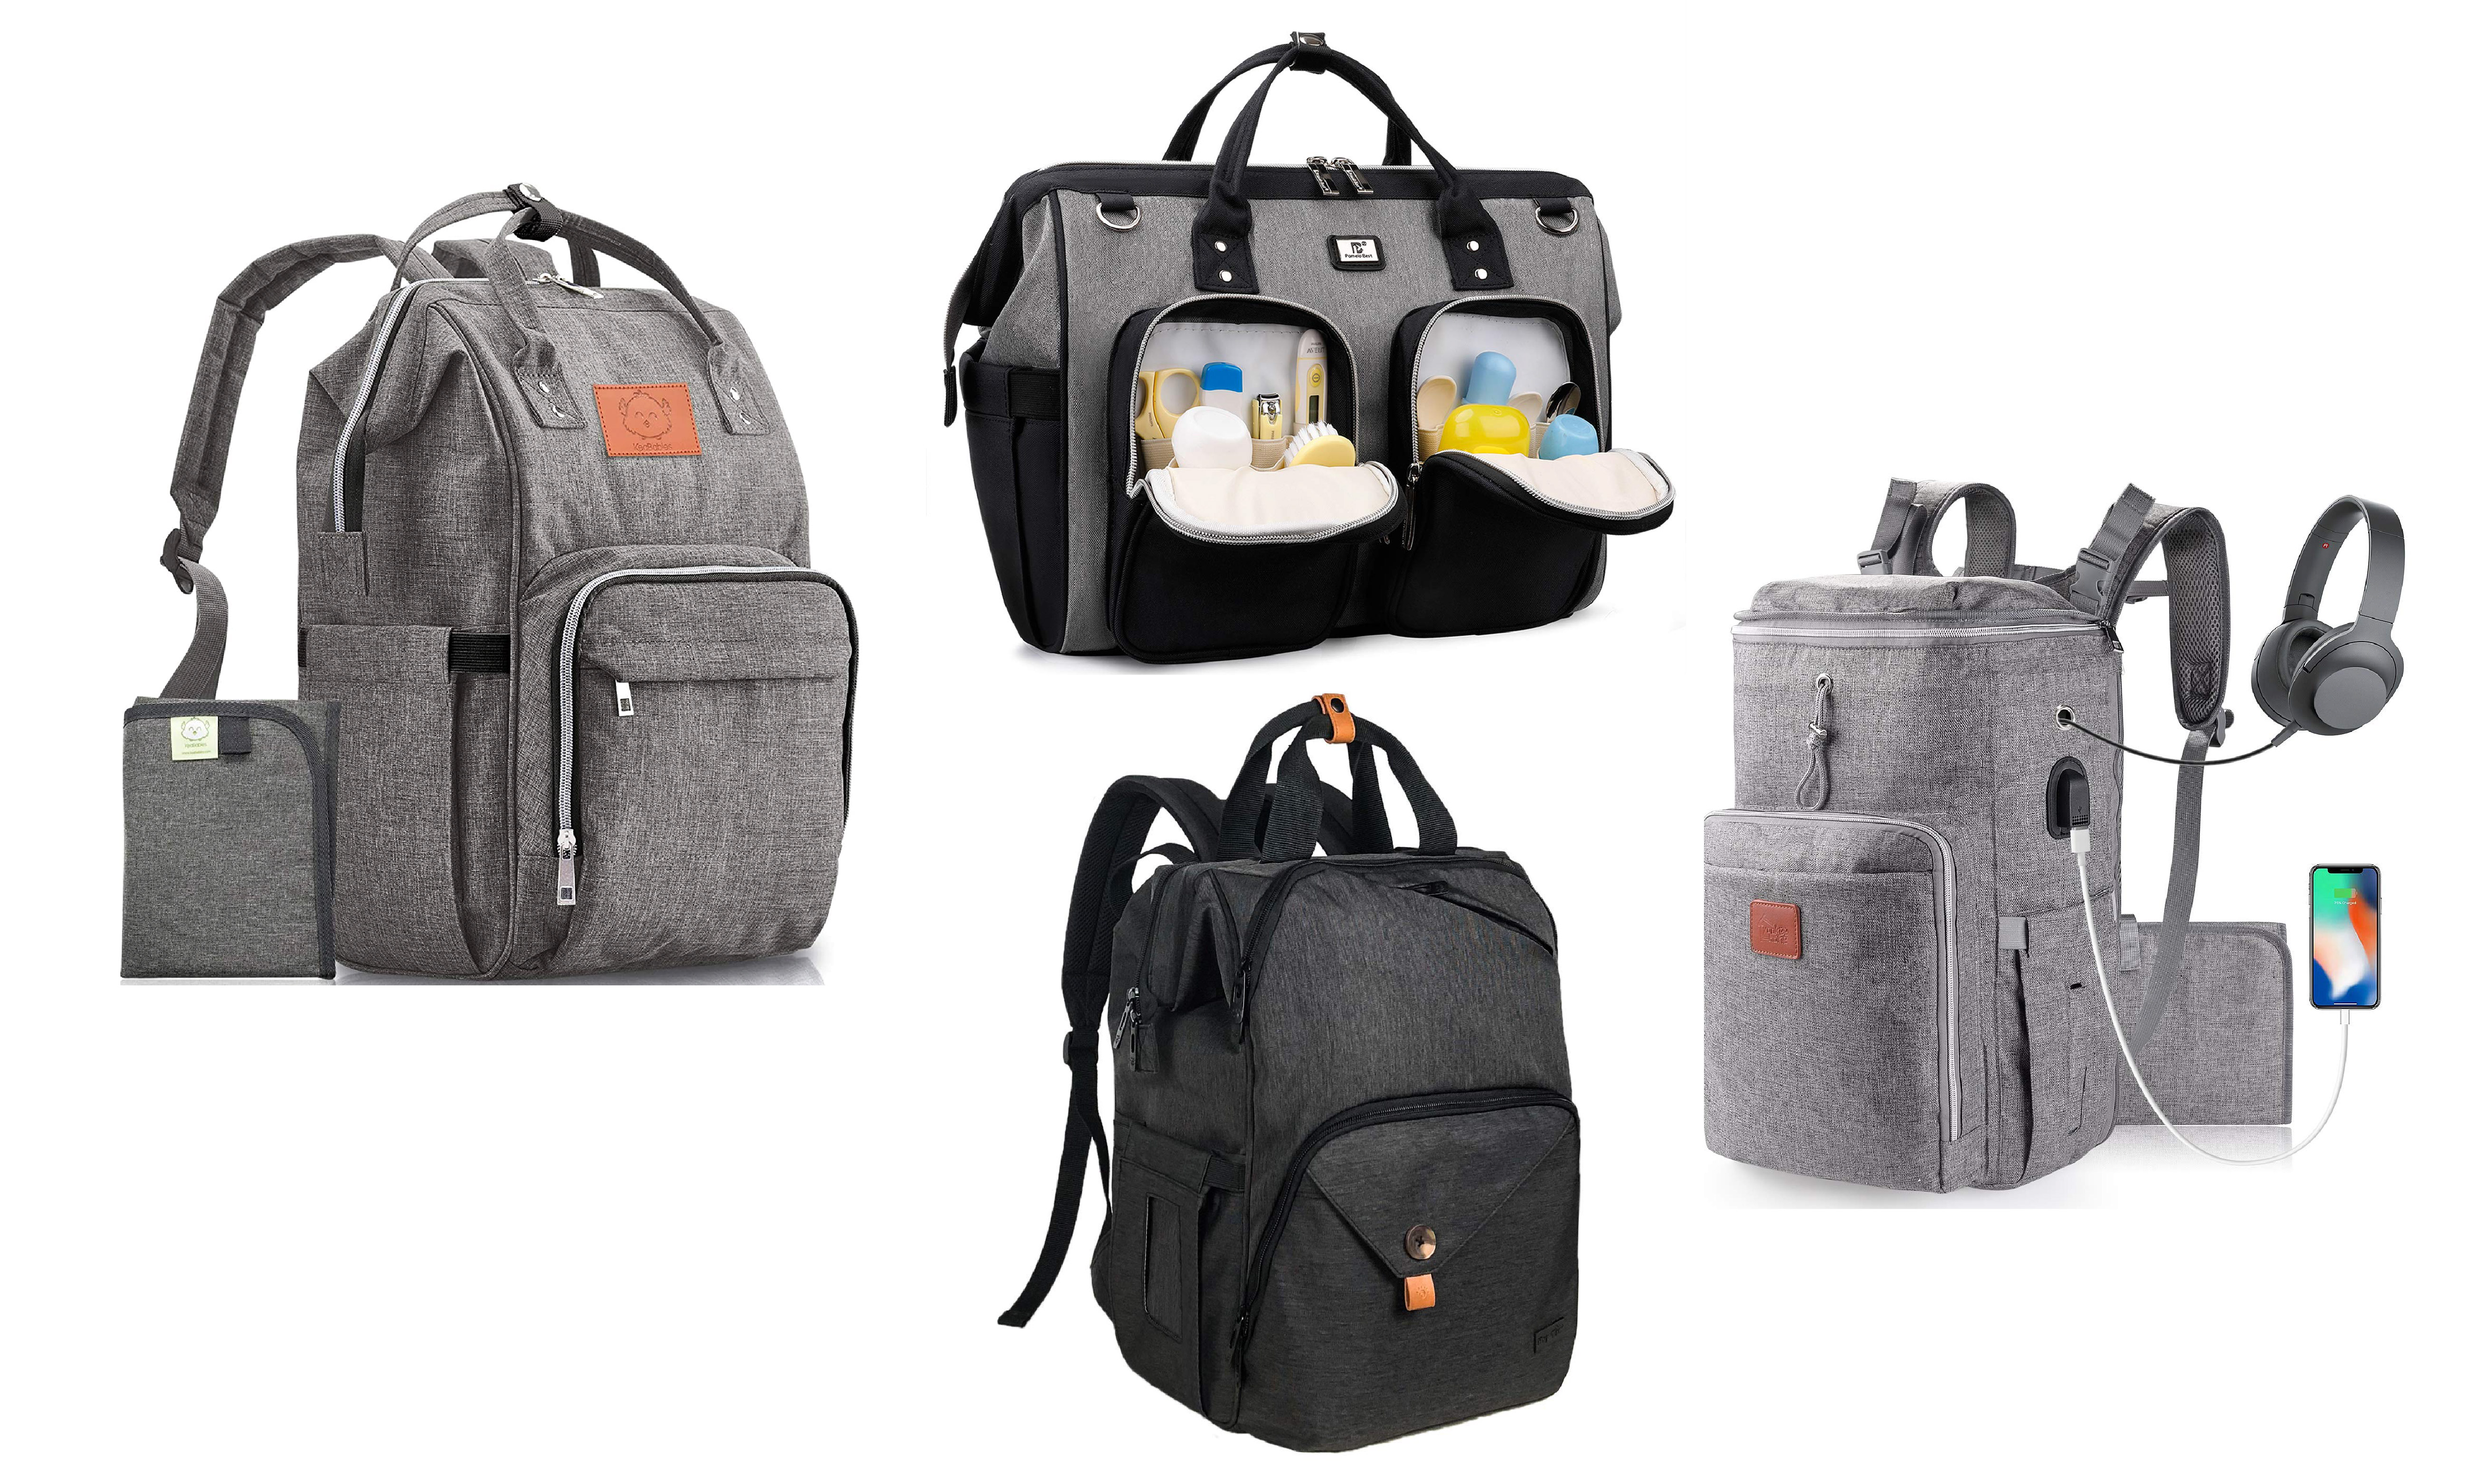  KeaBabies Baby Diaper Bag Backpack - Baby Bag for Boys